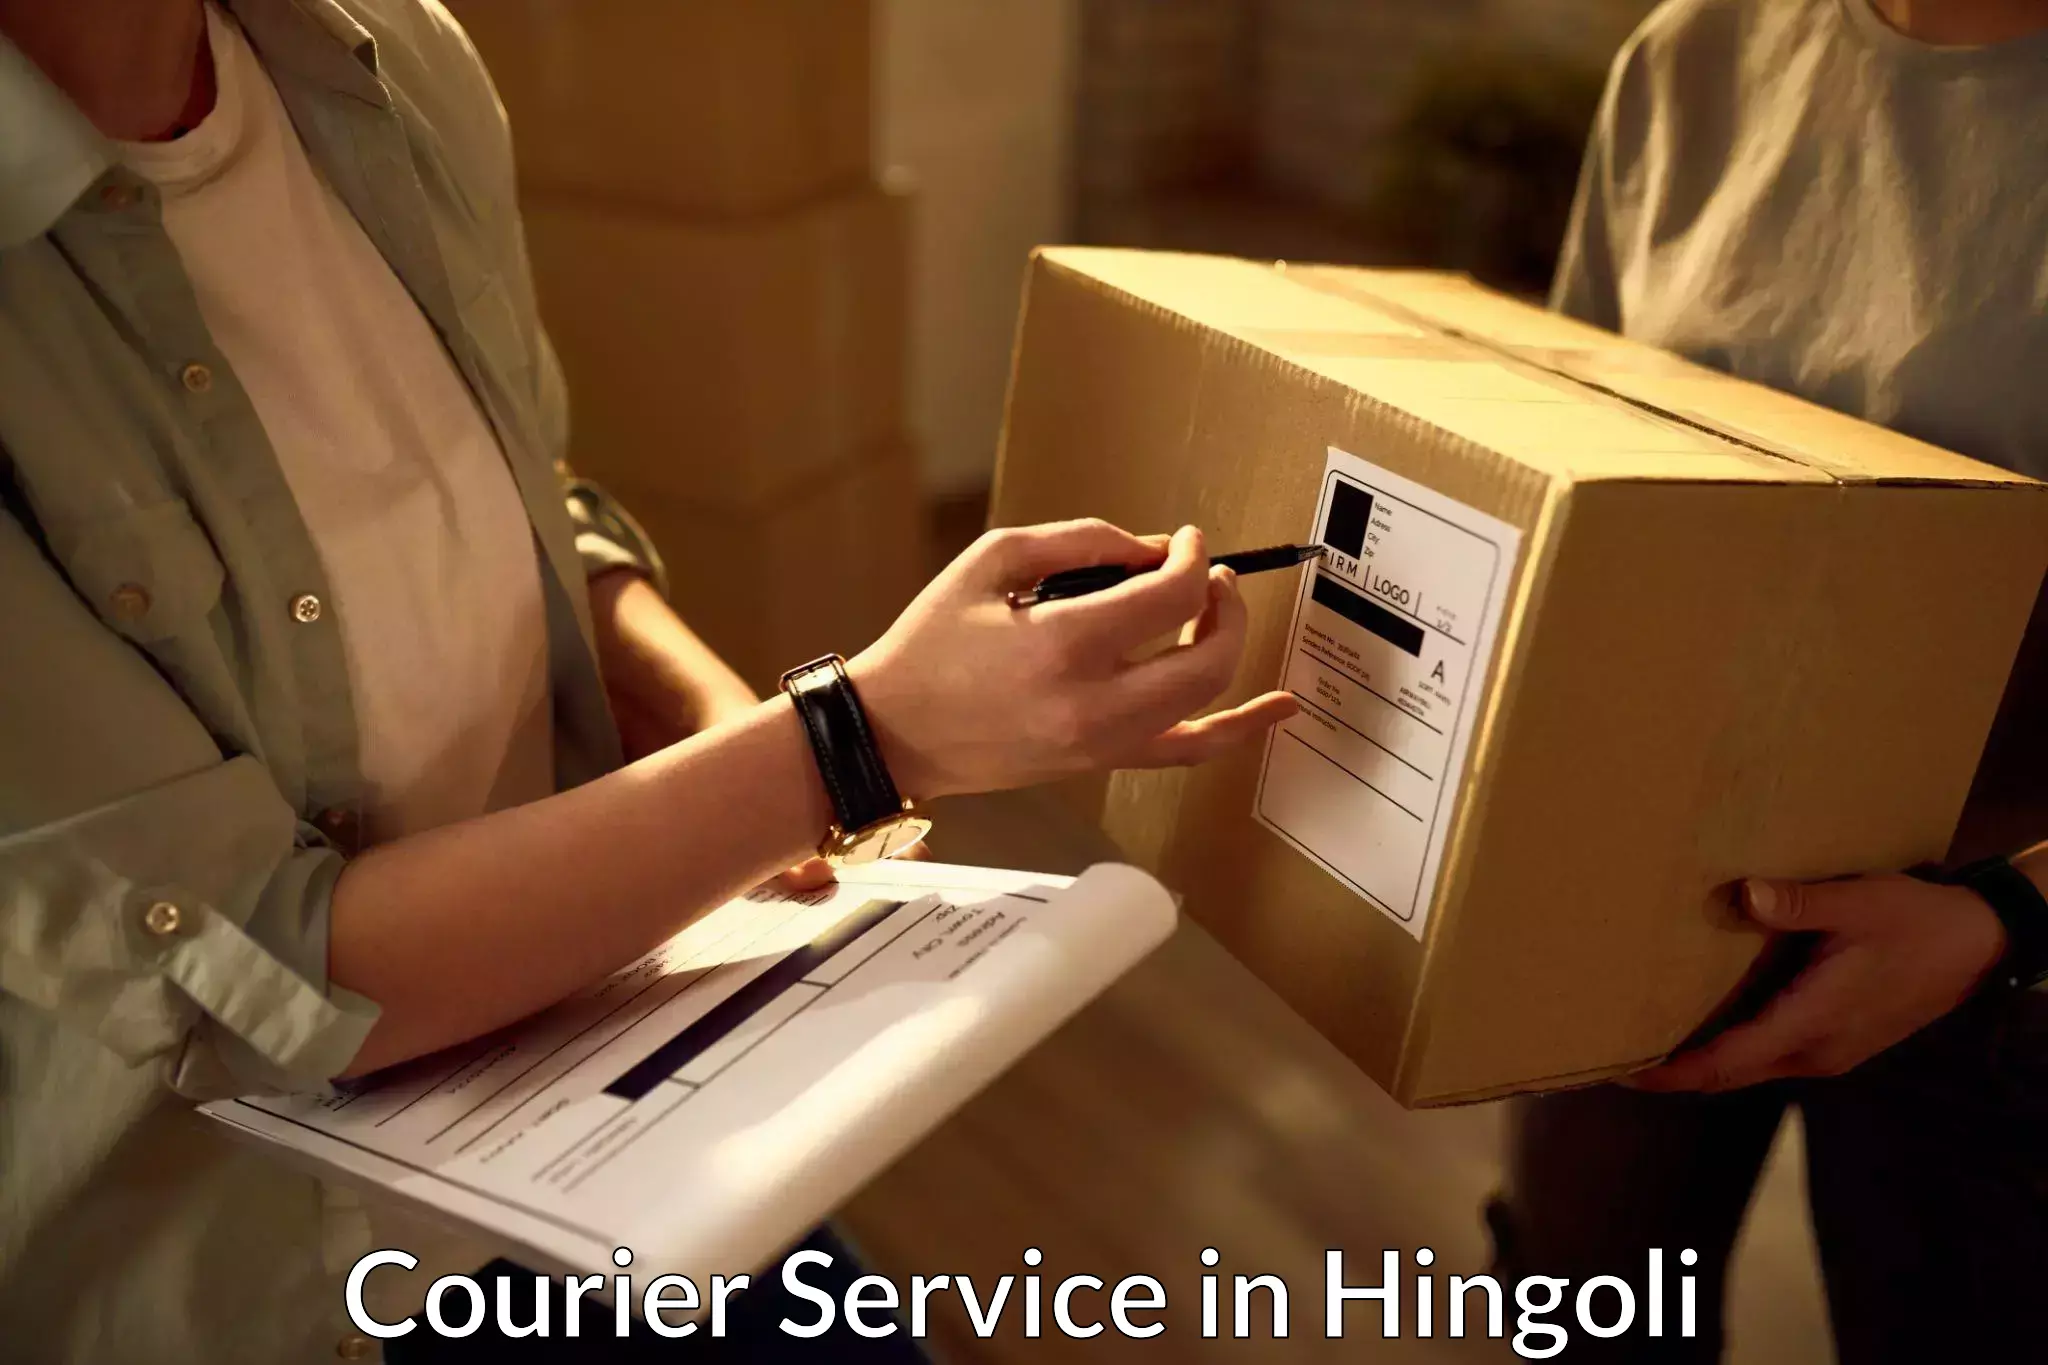 Remote area delivery in Hingoli